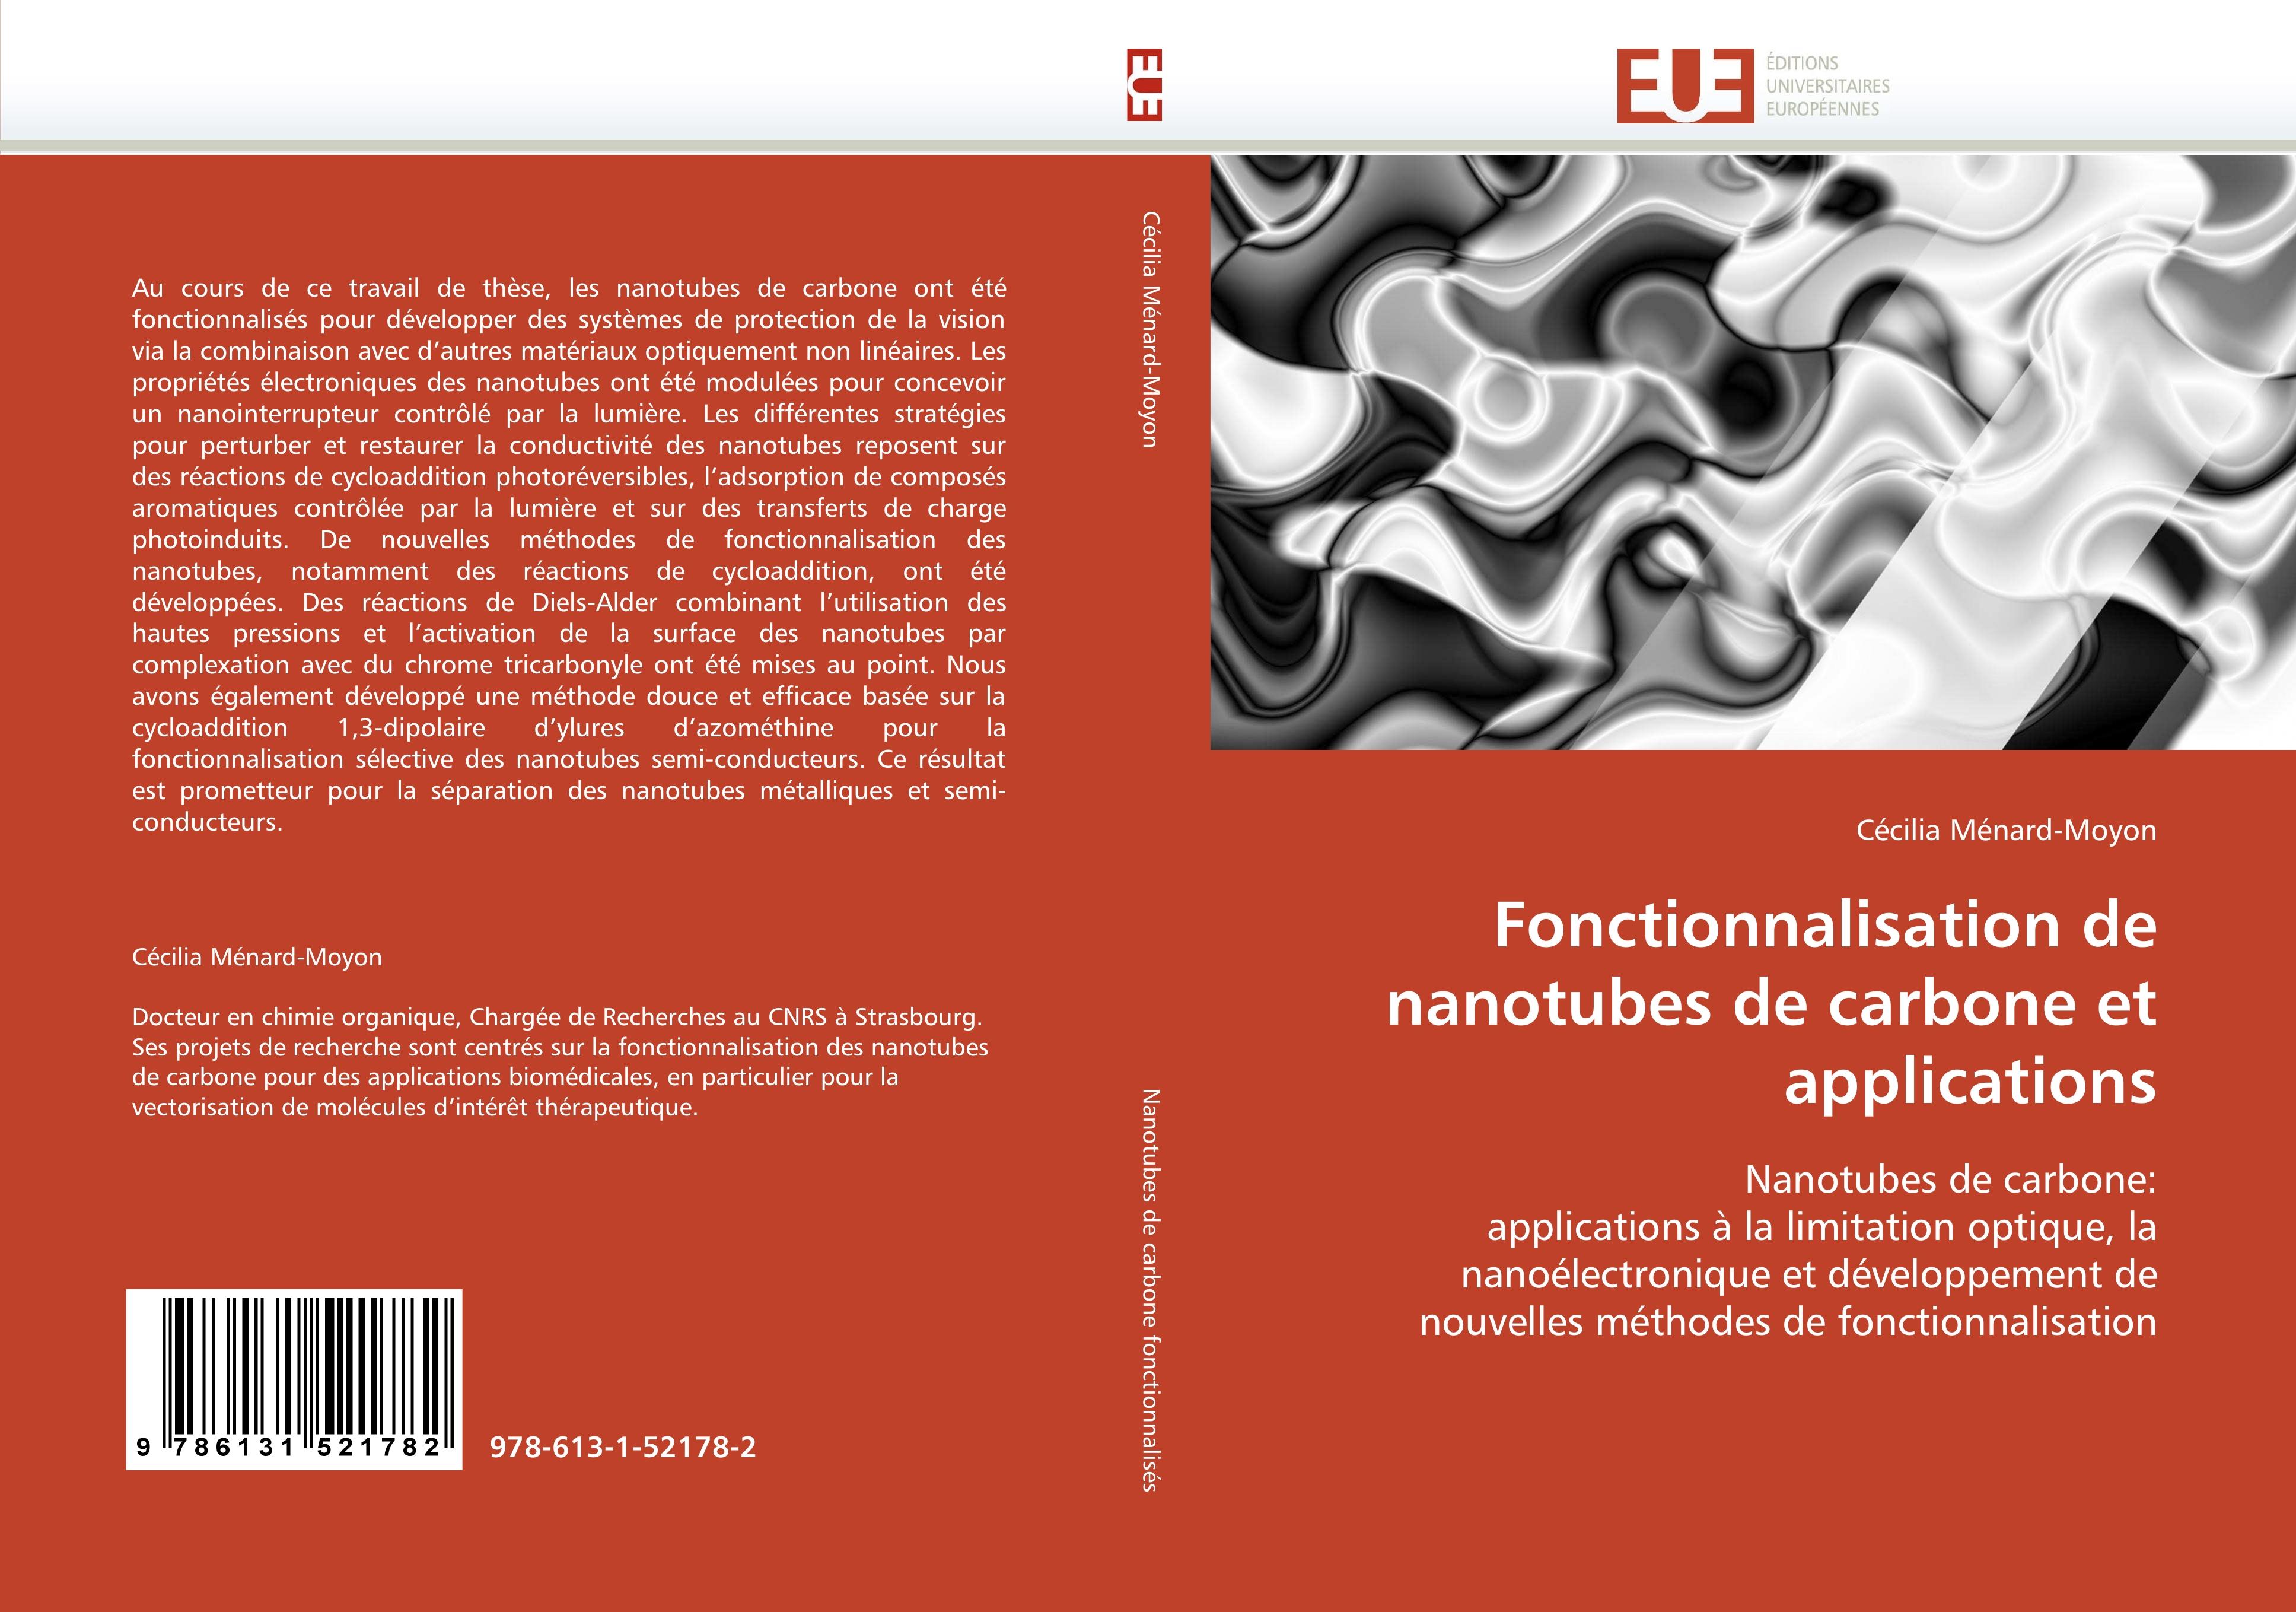 Fonctionnalisation de nanotubes de carbone et applications - CÃƒÂ©cilia MÃƒÂ©nard-Moyon